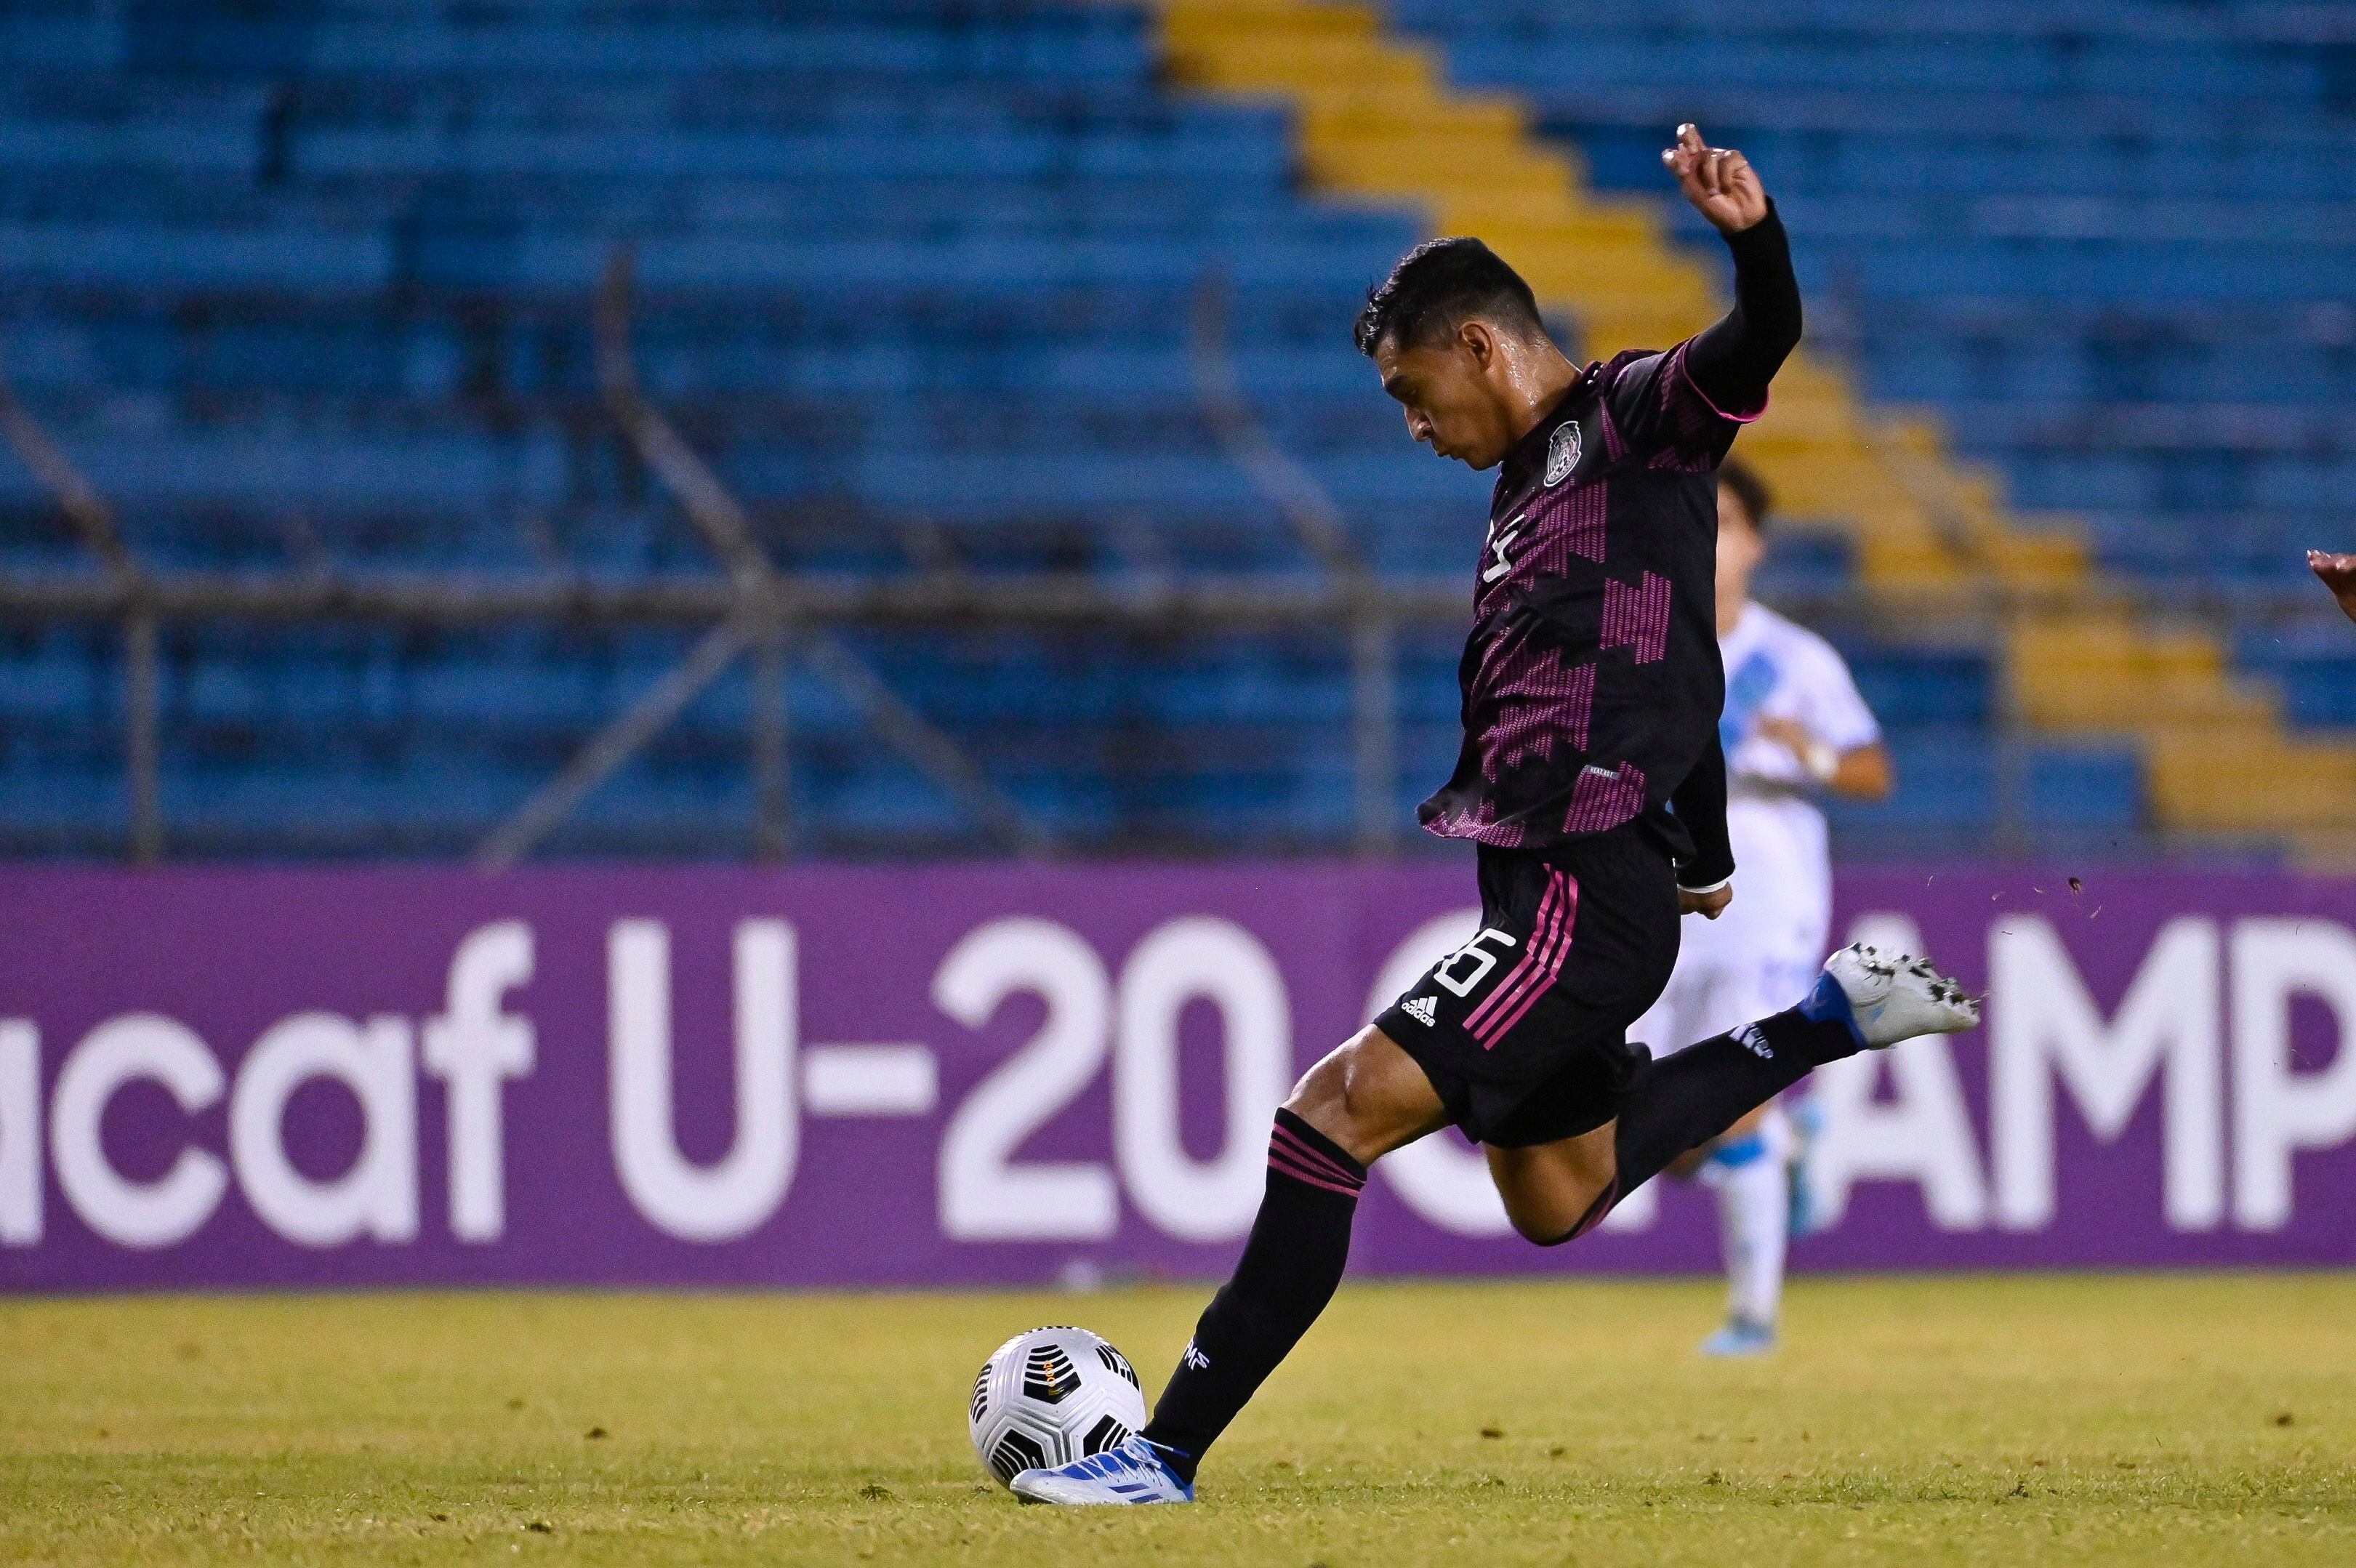 México vs Guatemala: Por qué la Sub 20 no irá a París 2024 tras perder -  Grupo Milenio